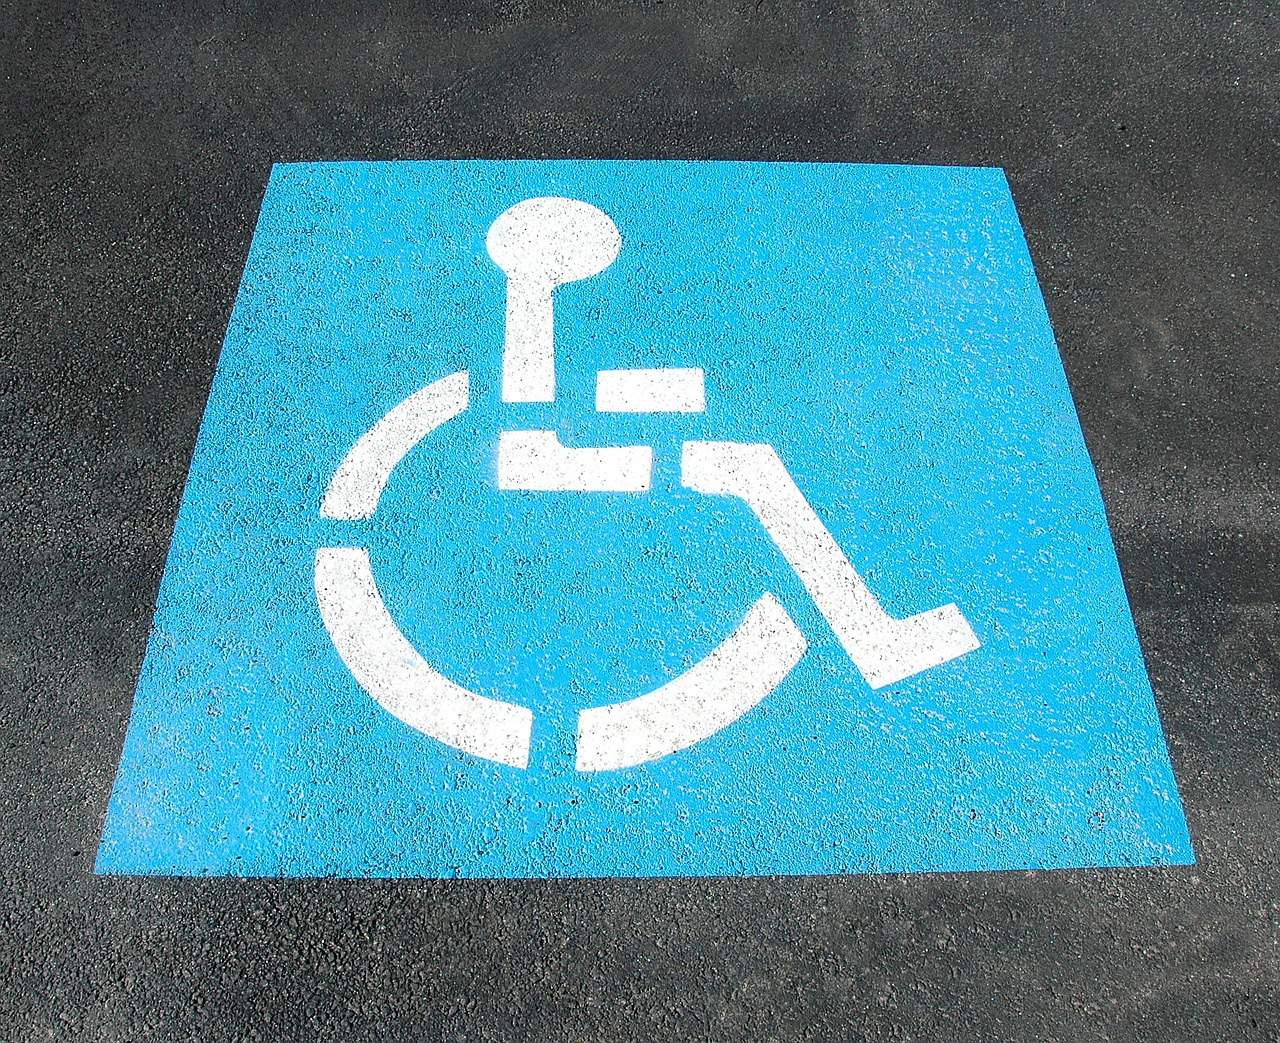 parking discapacidad